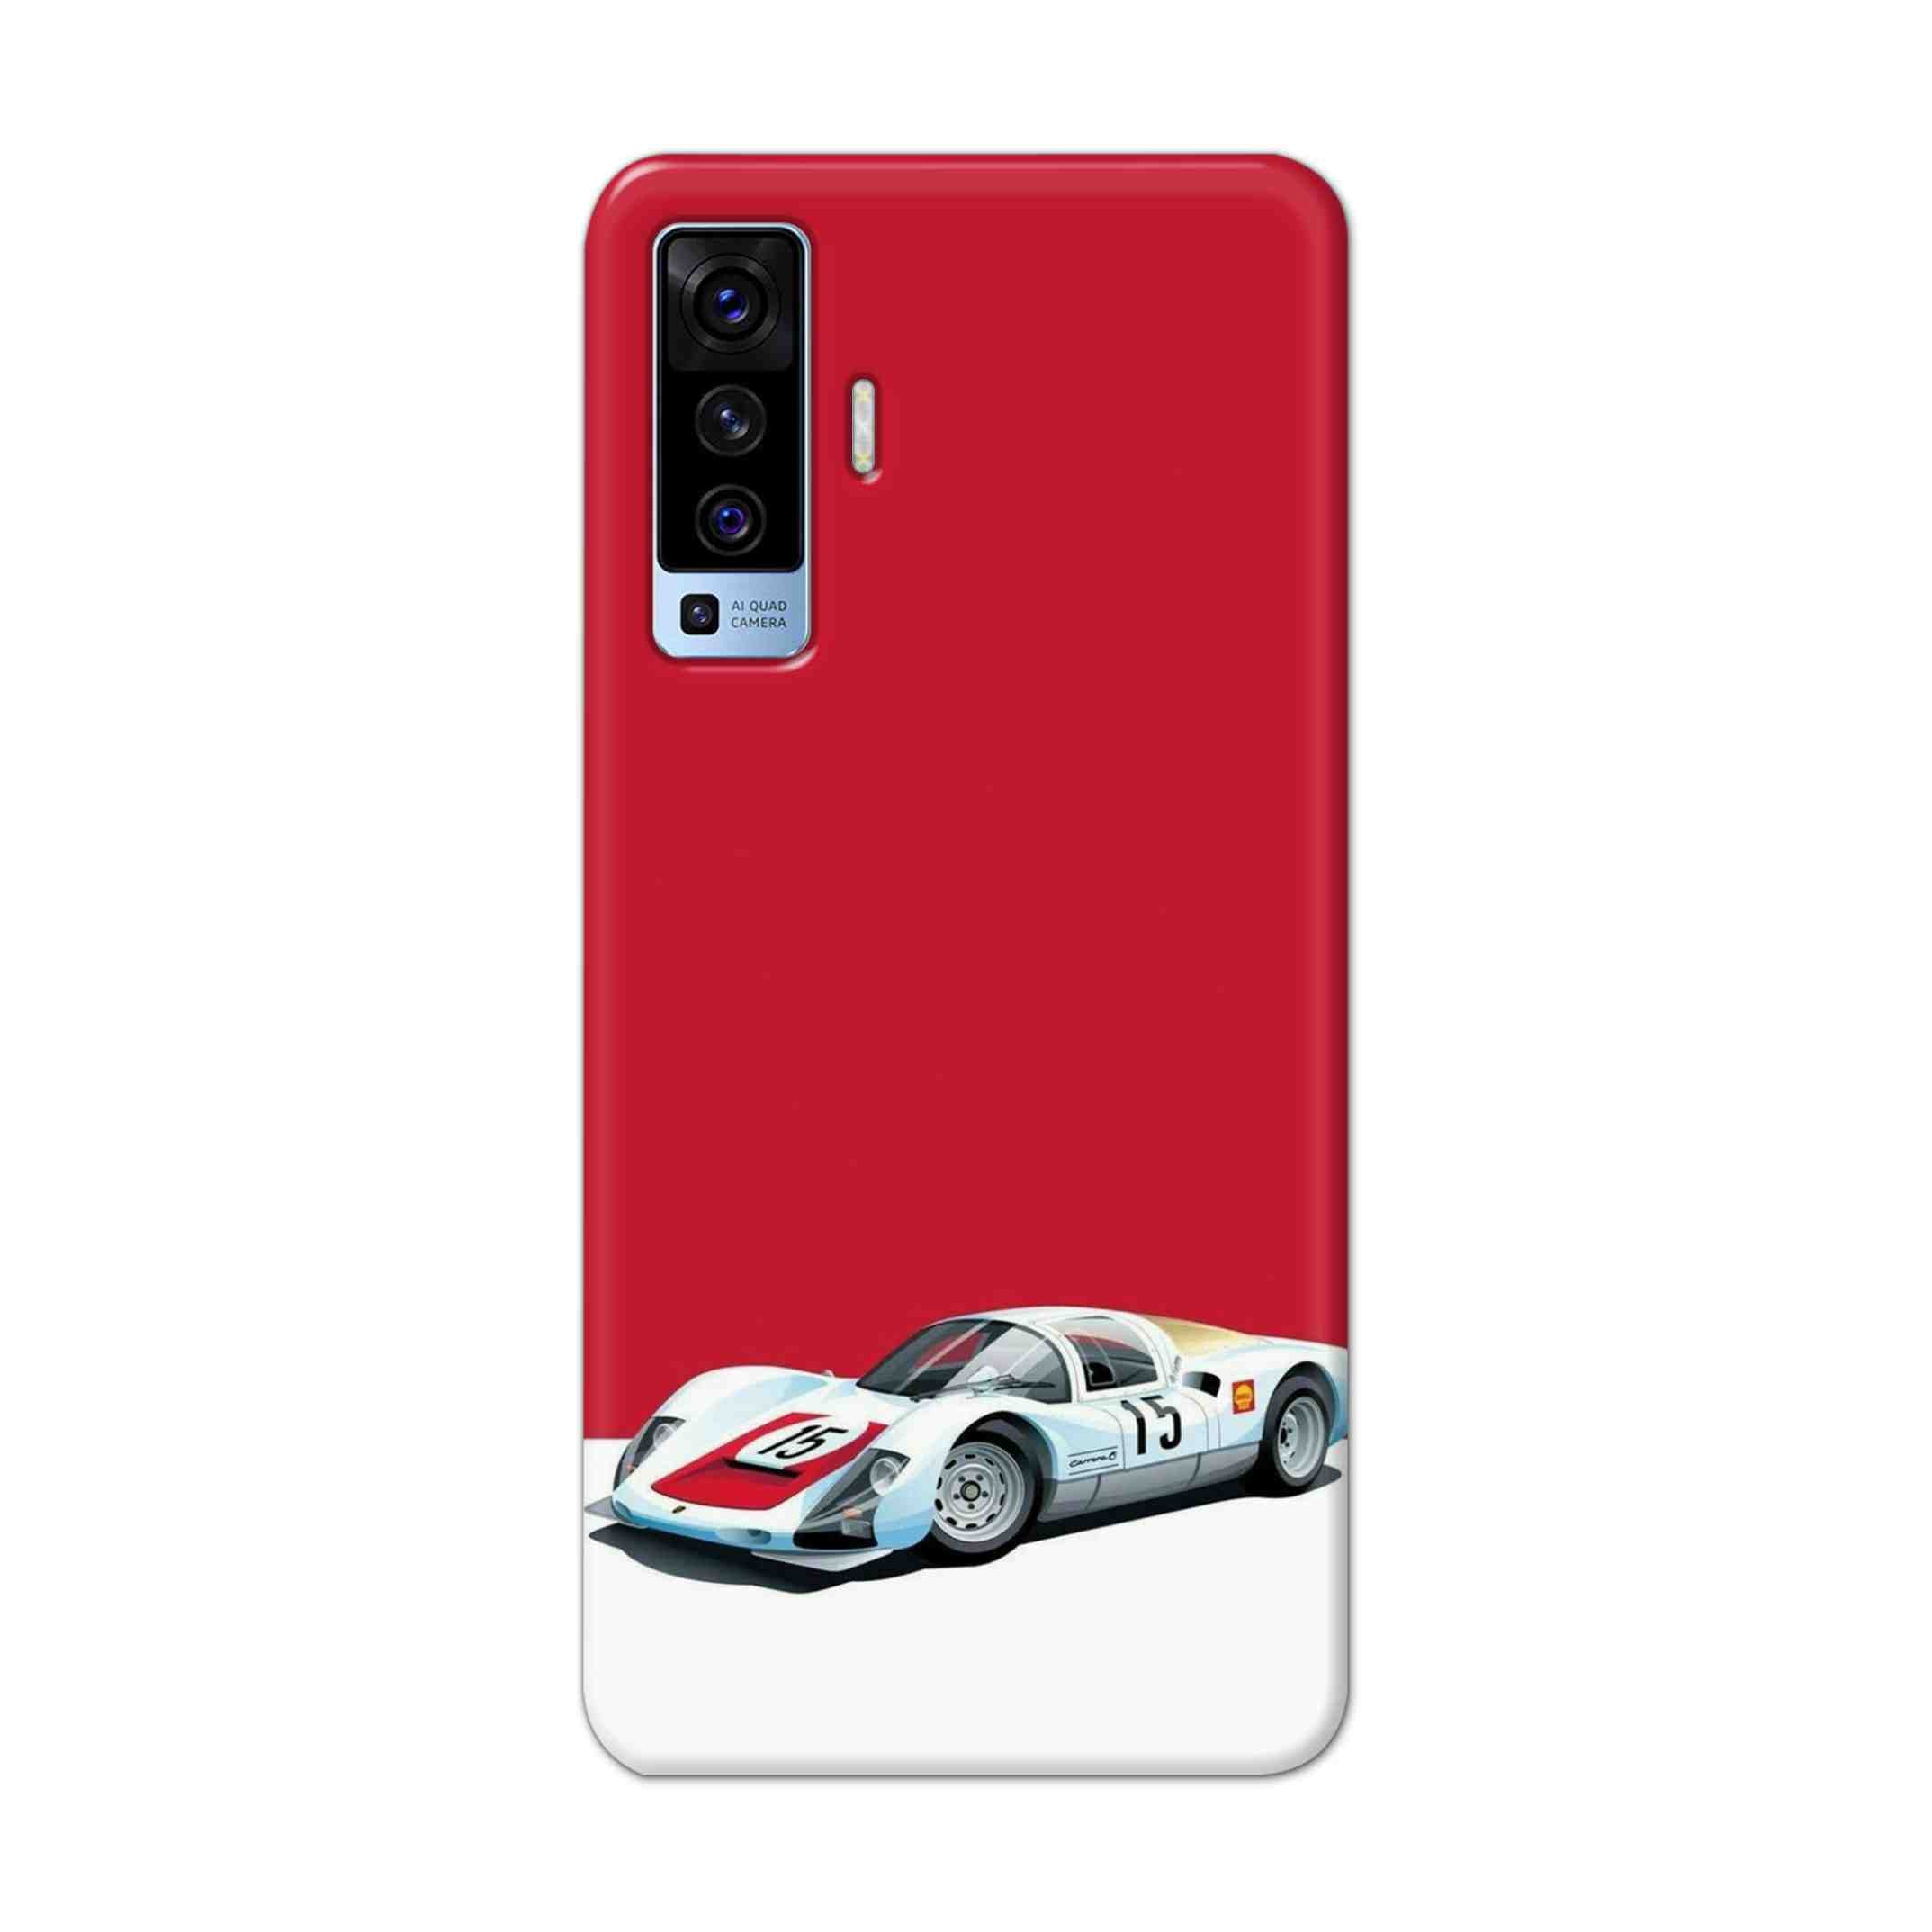 Buy Ferrari F15 Hard Back Mobile Phone Case Cover For Vivo X50 Online